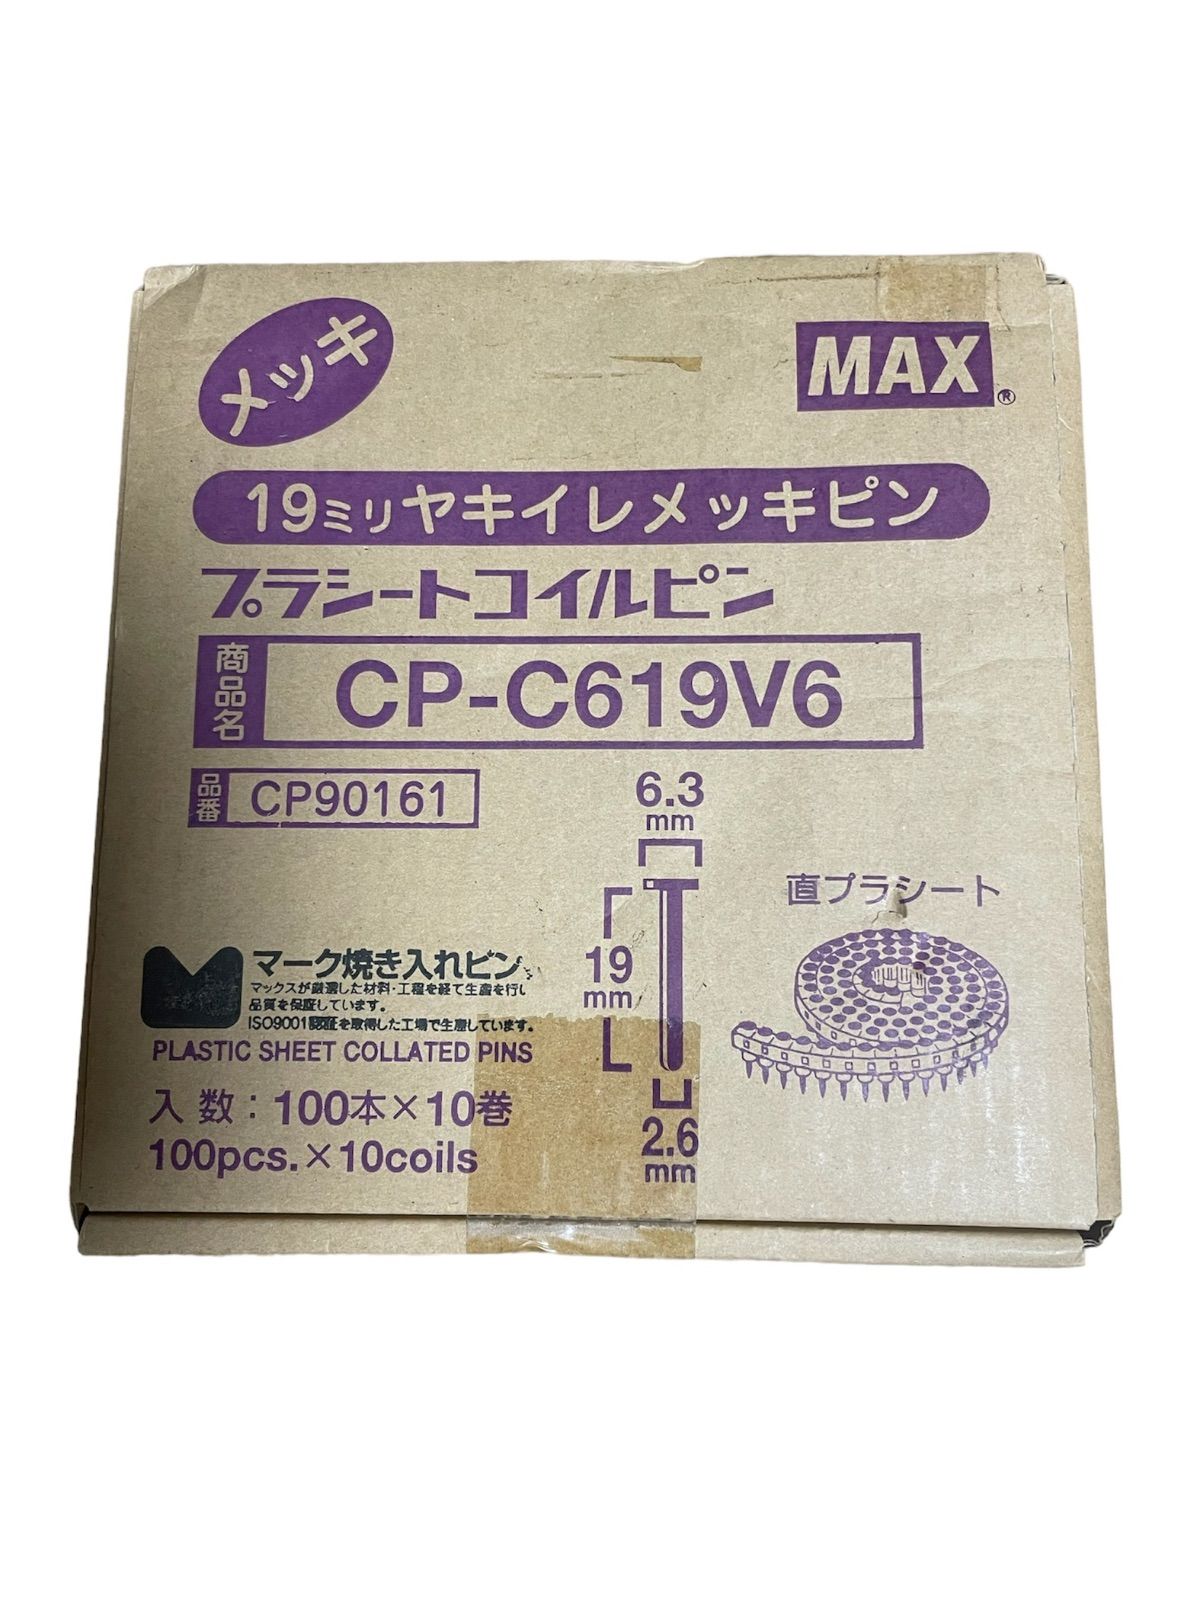 マックス(MAX) HN-25C用コンクリートピン CP-C619V6 長さ19mm Packpack メルカリ